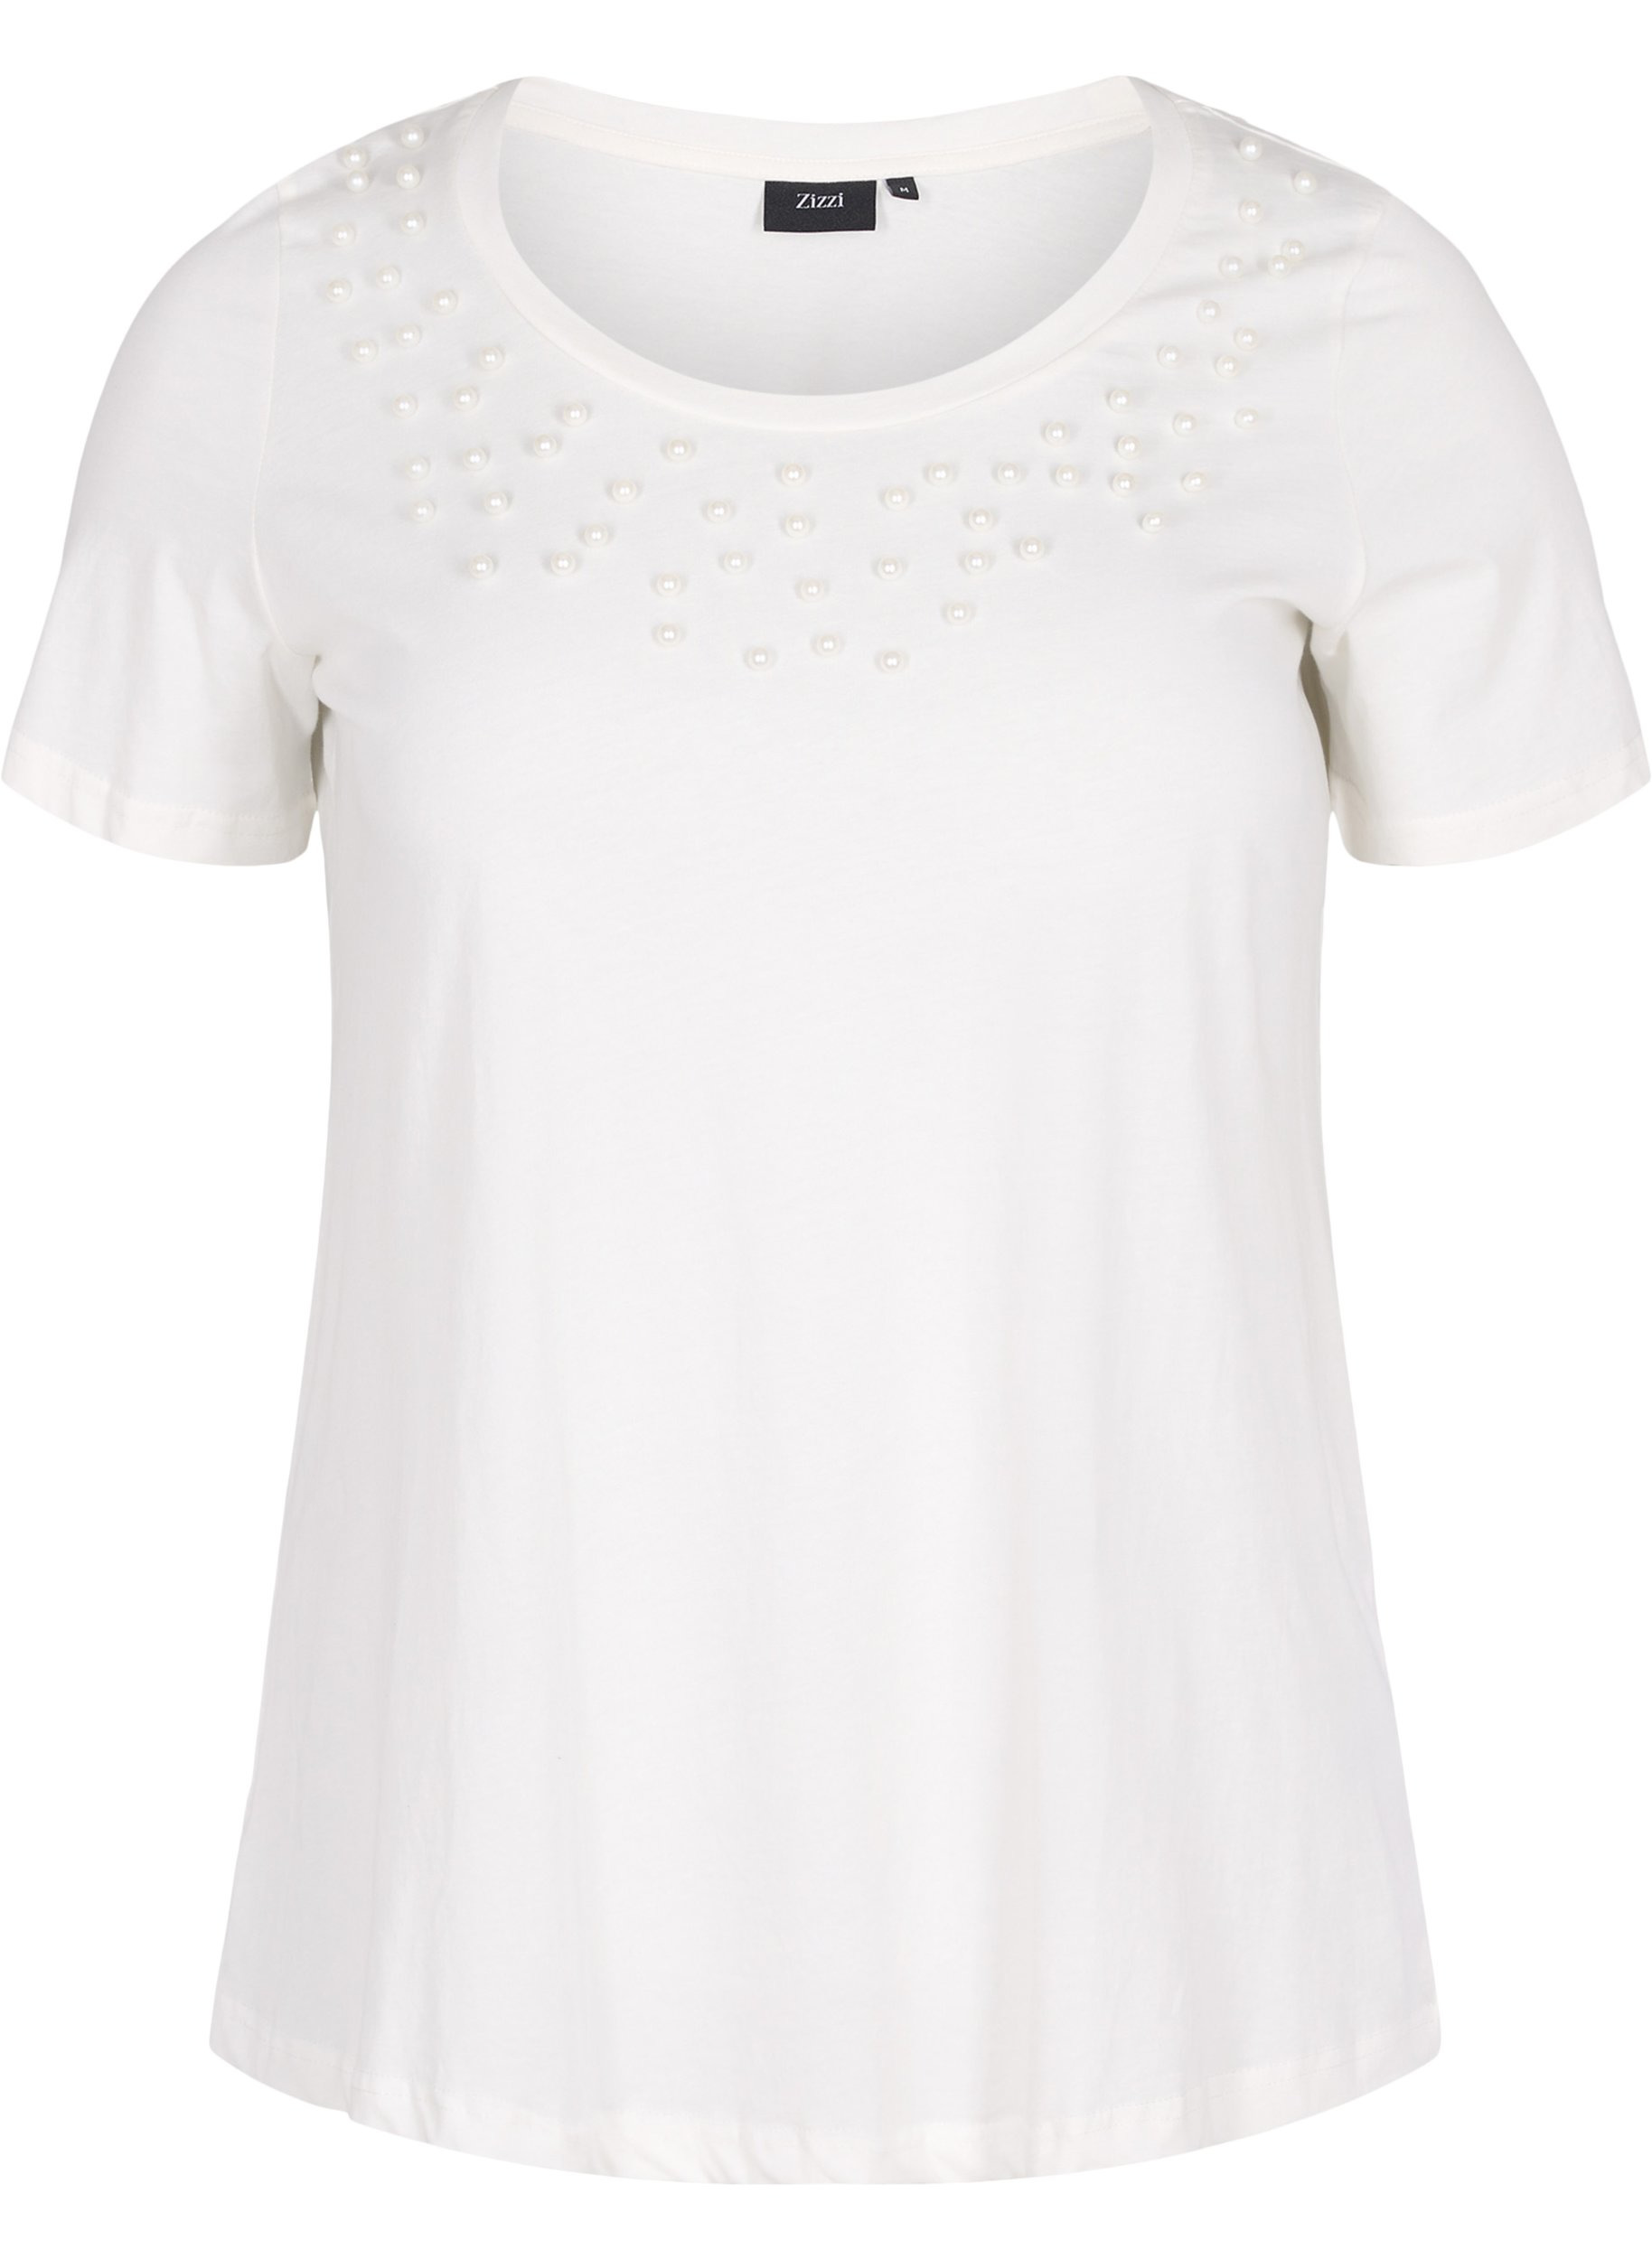 Puuvillainen t-paita helmillä, Warm Off-white